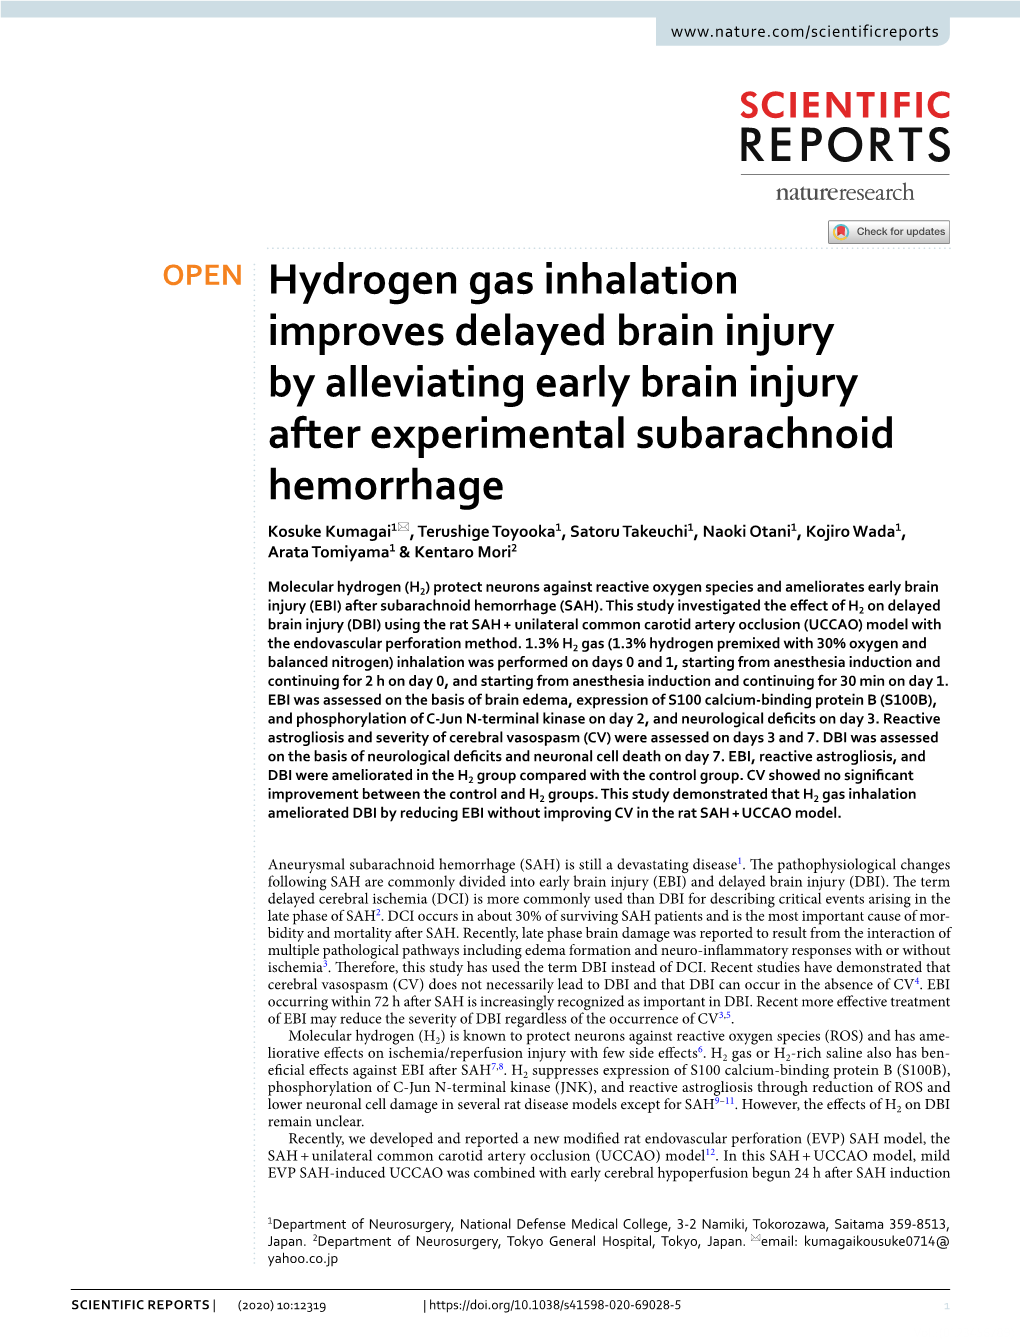 Hydrogen Gas Inhalation Improves Delayed Brain Injury by Alleviating